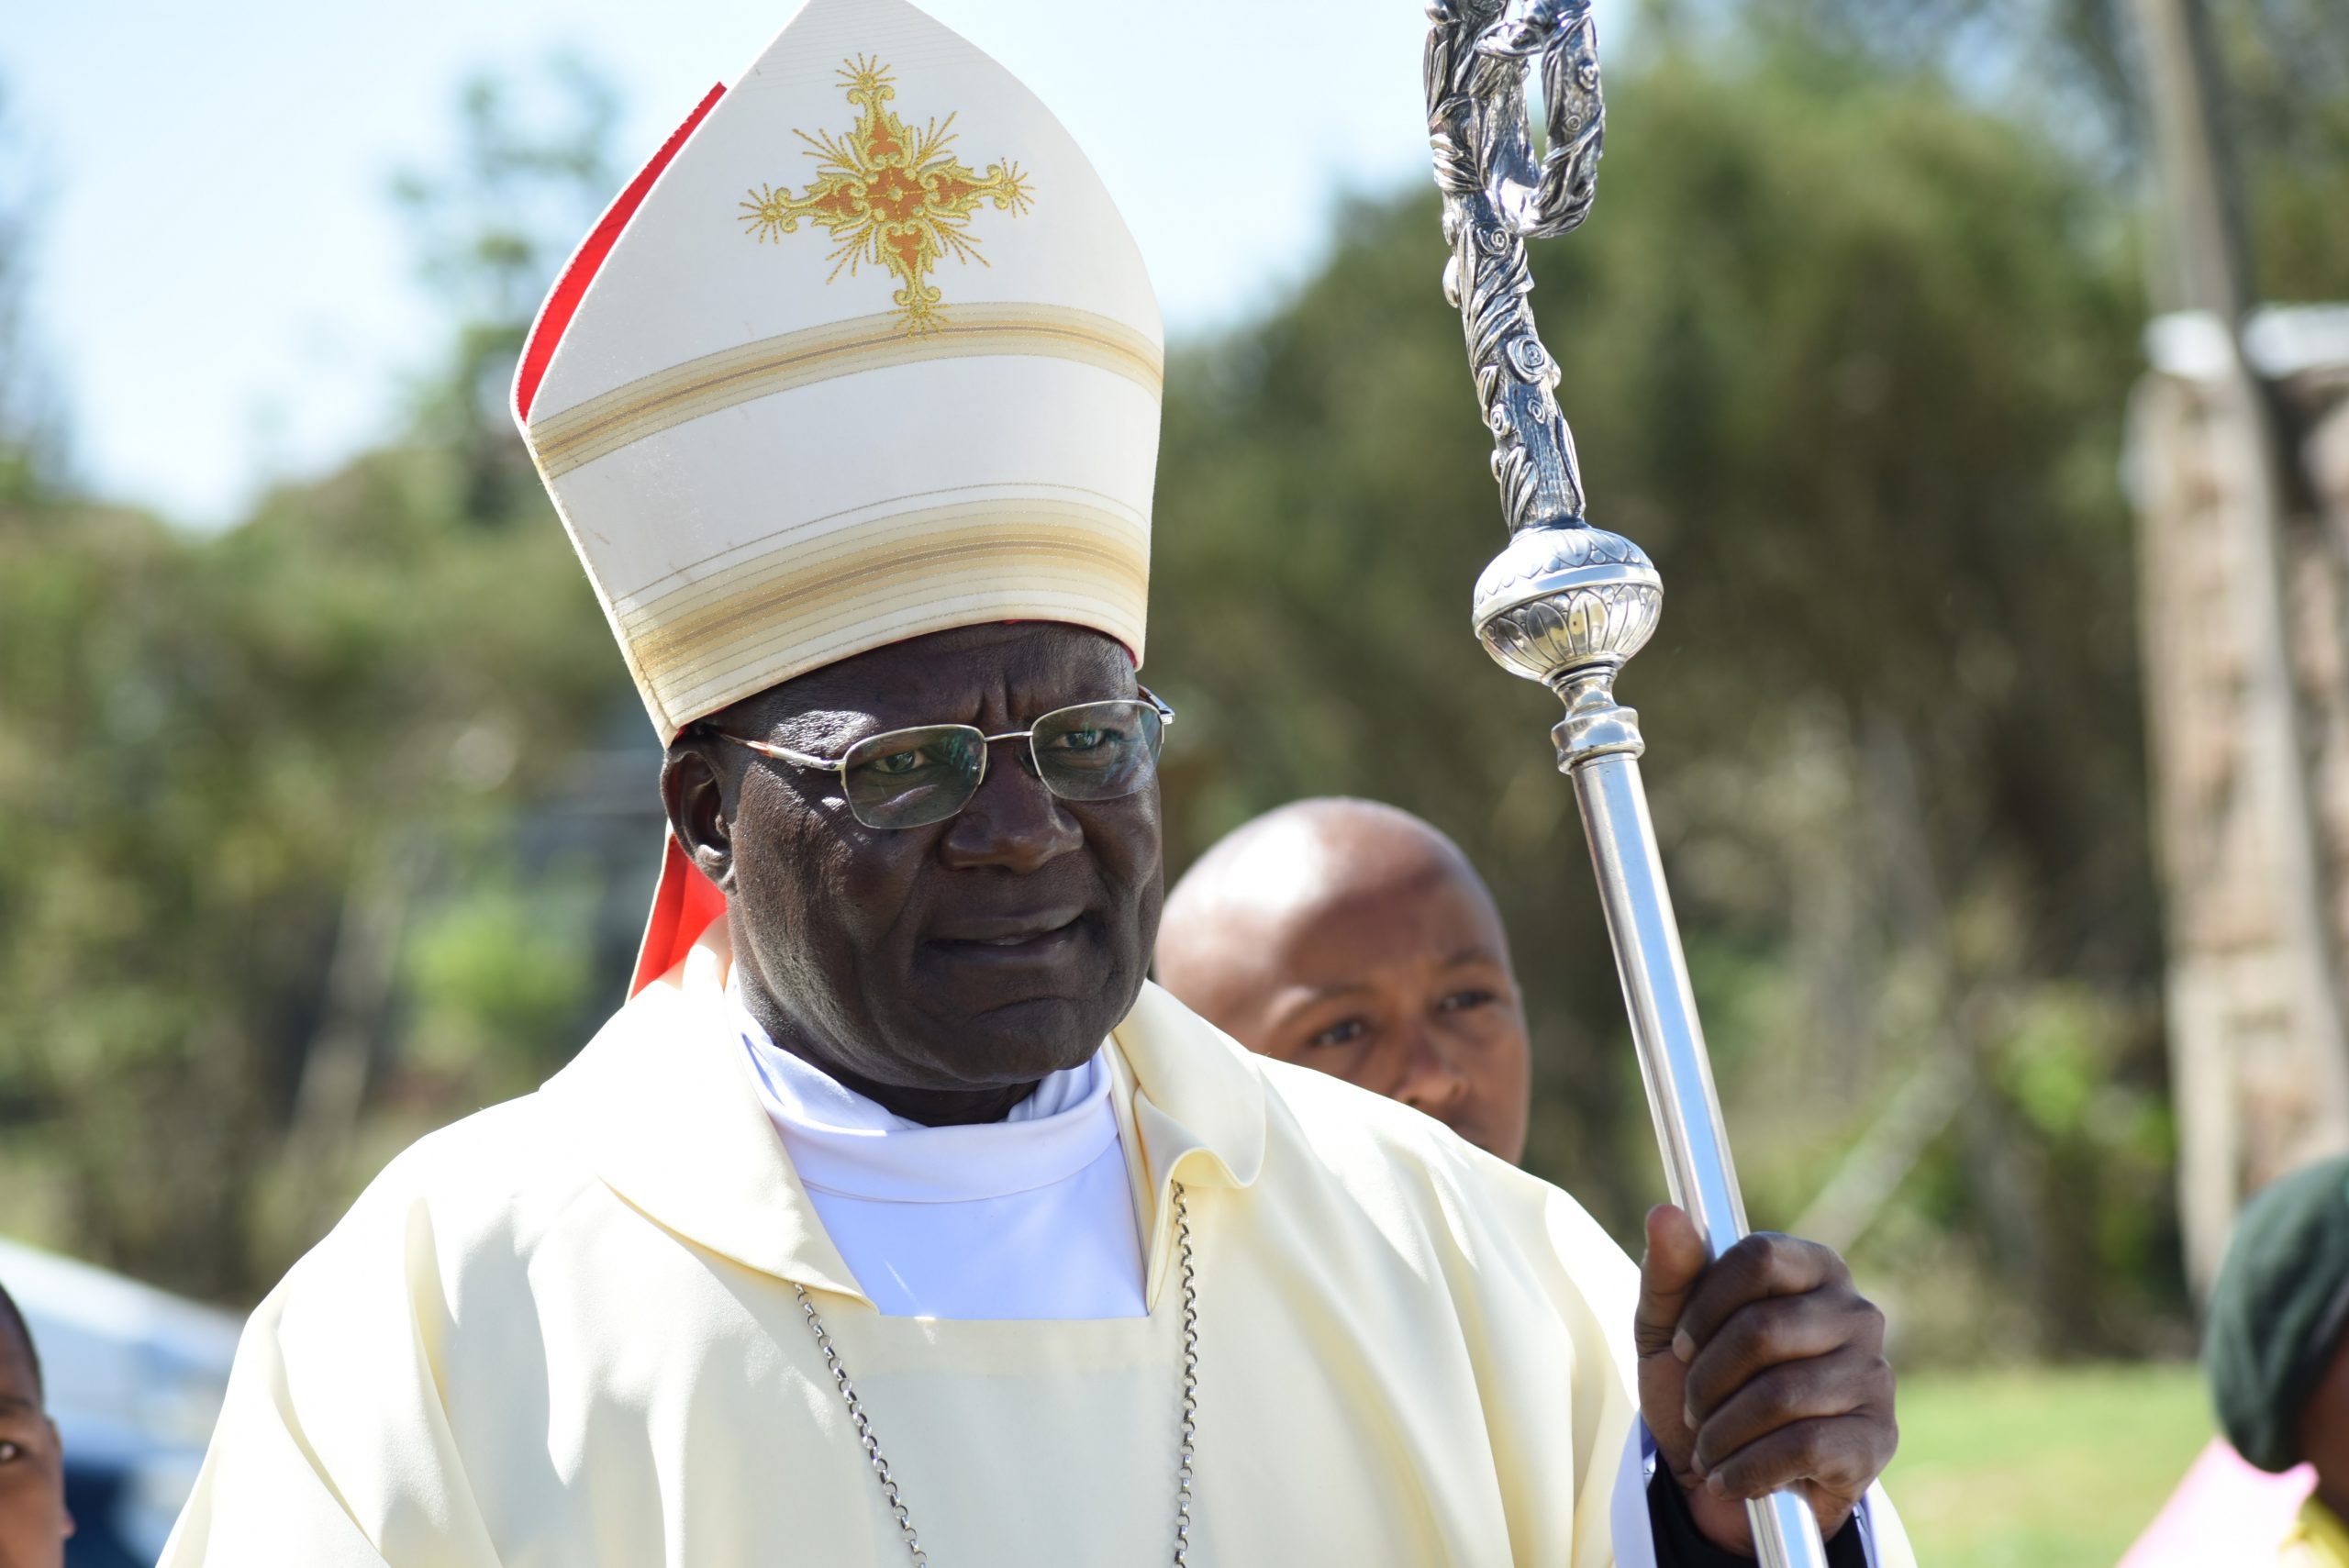 Monsignor John Oballa, vescovo di Ngong in Kenya, è uno dei tanti prelati preoccupati della recente decisione di Papa Francesco sulle benedizioni alle coppie omosessuali.